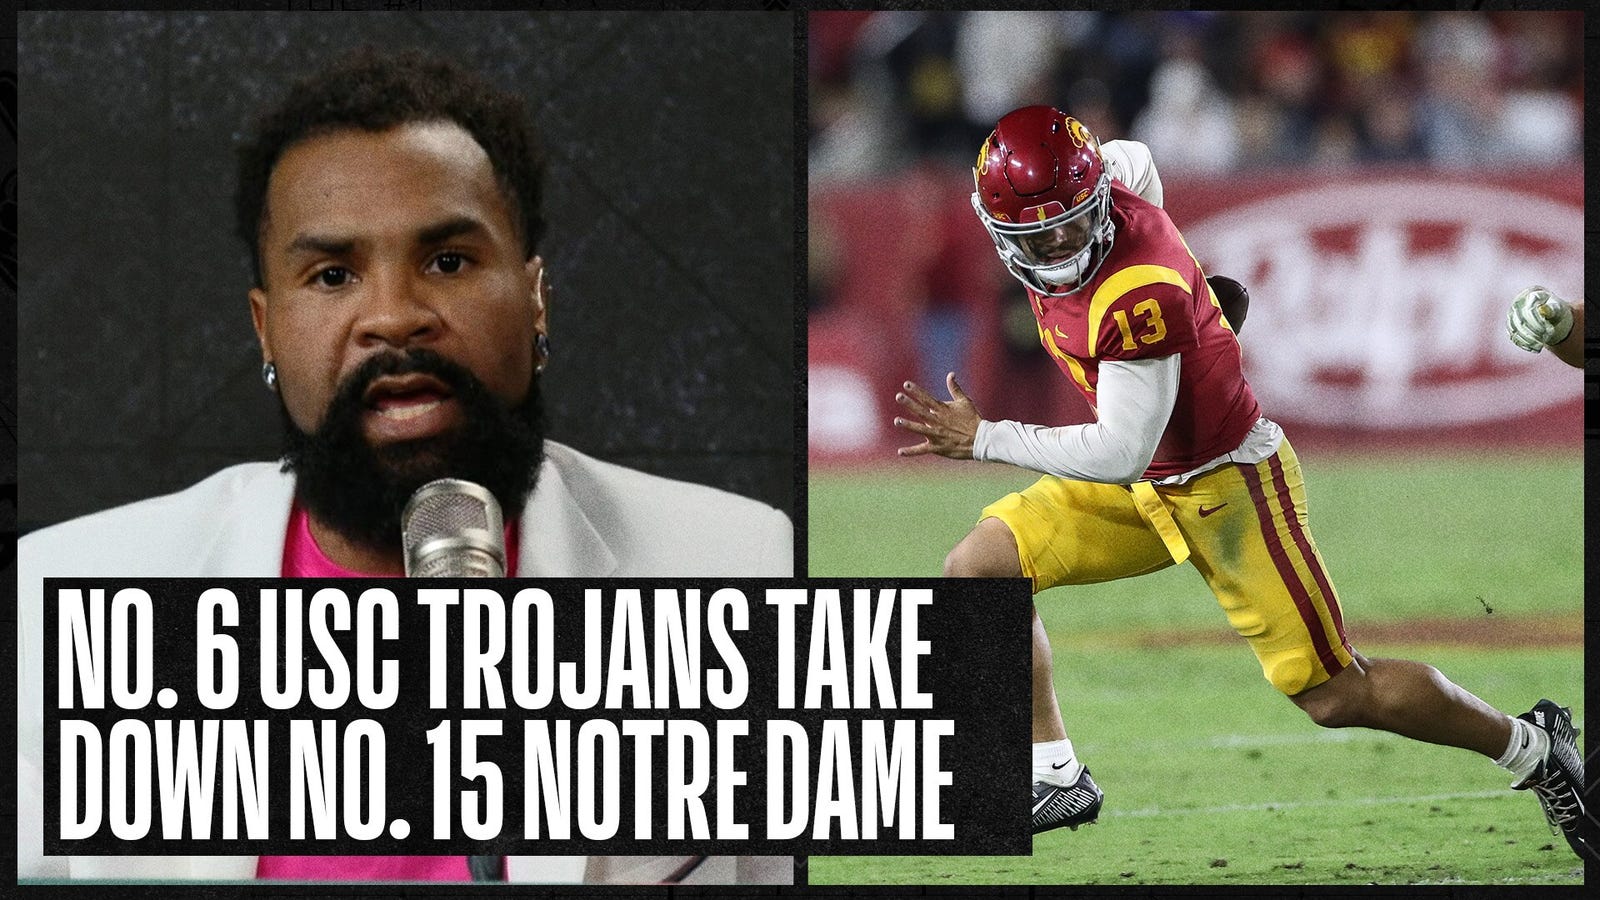 No. 6 USC takes down No. 15 Notre Dame